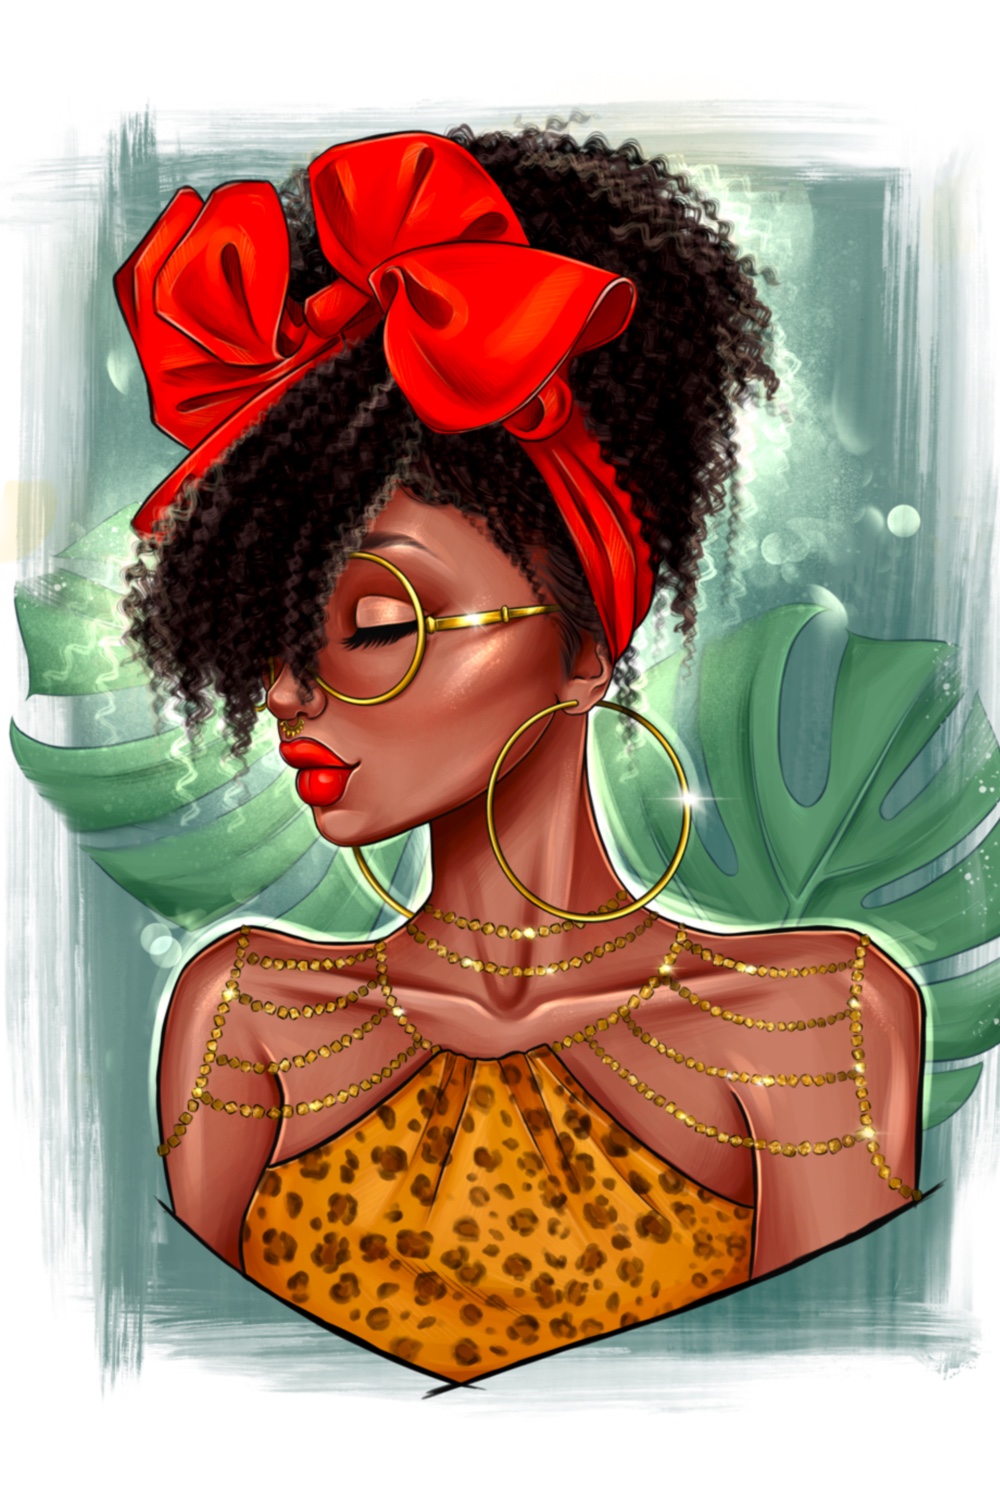 Afro Girl Clipart Pinterest Image.